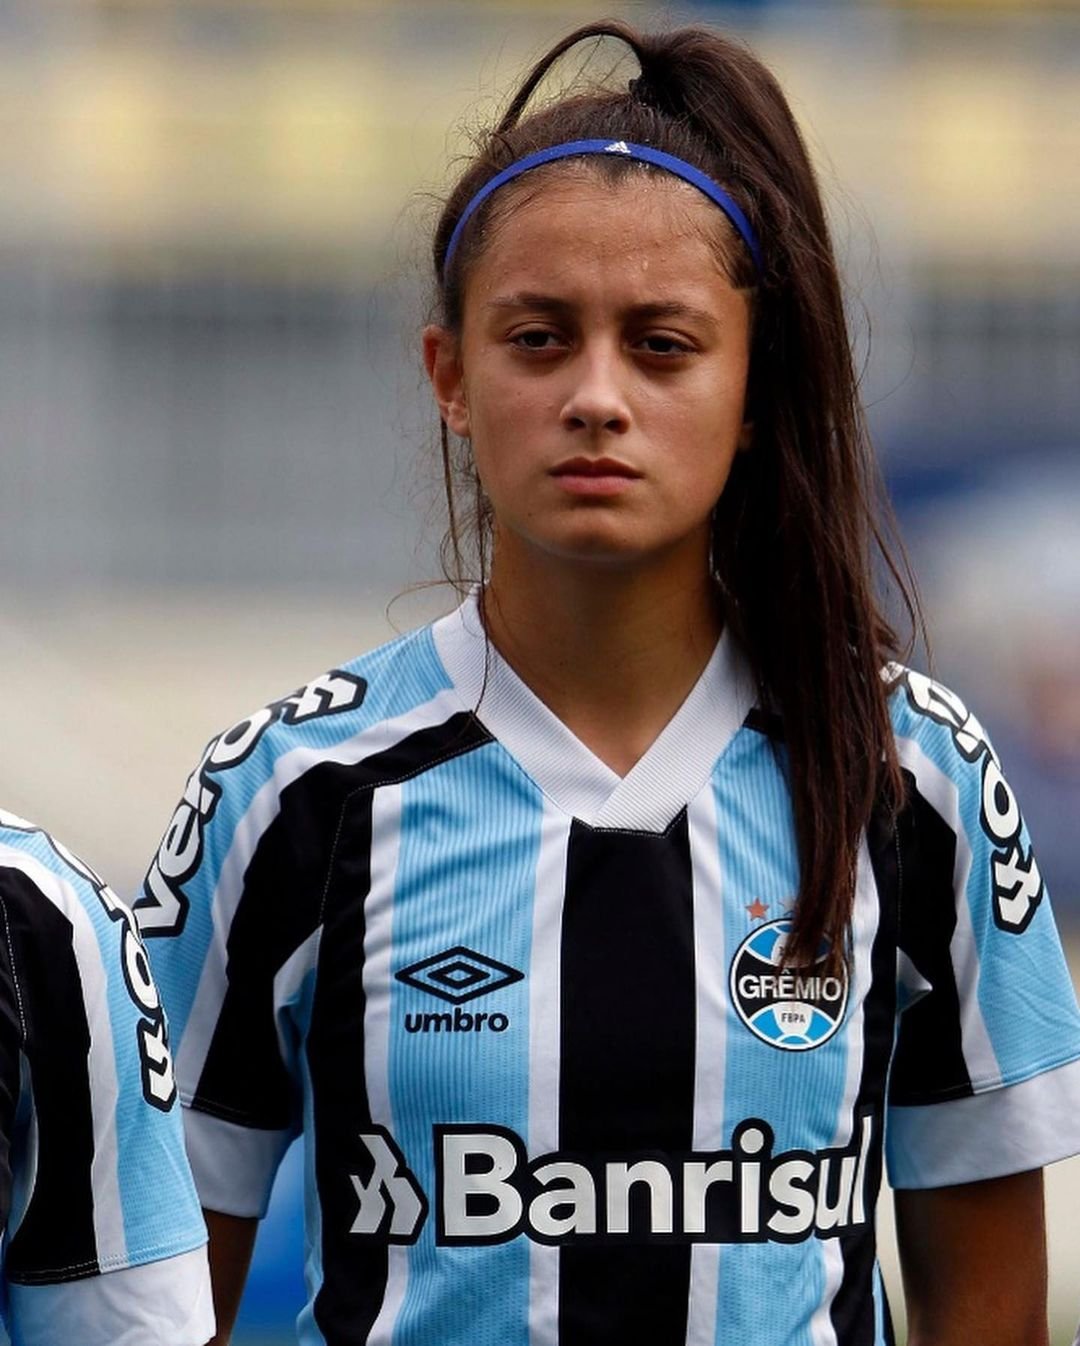 Seleção Feminina de Futebol on X: Bom dia, meu Brasil! 🇧🇷 Hoje